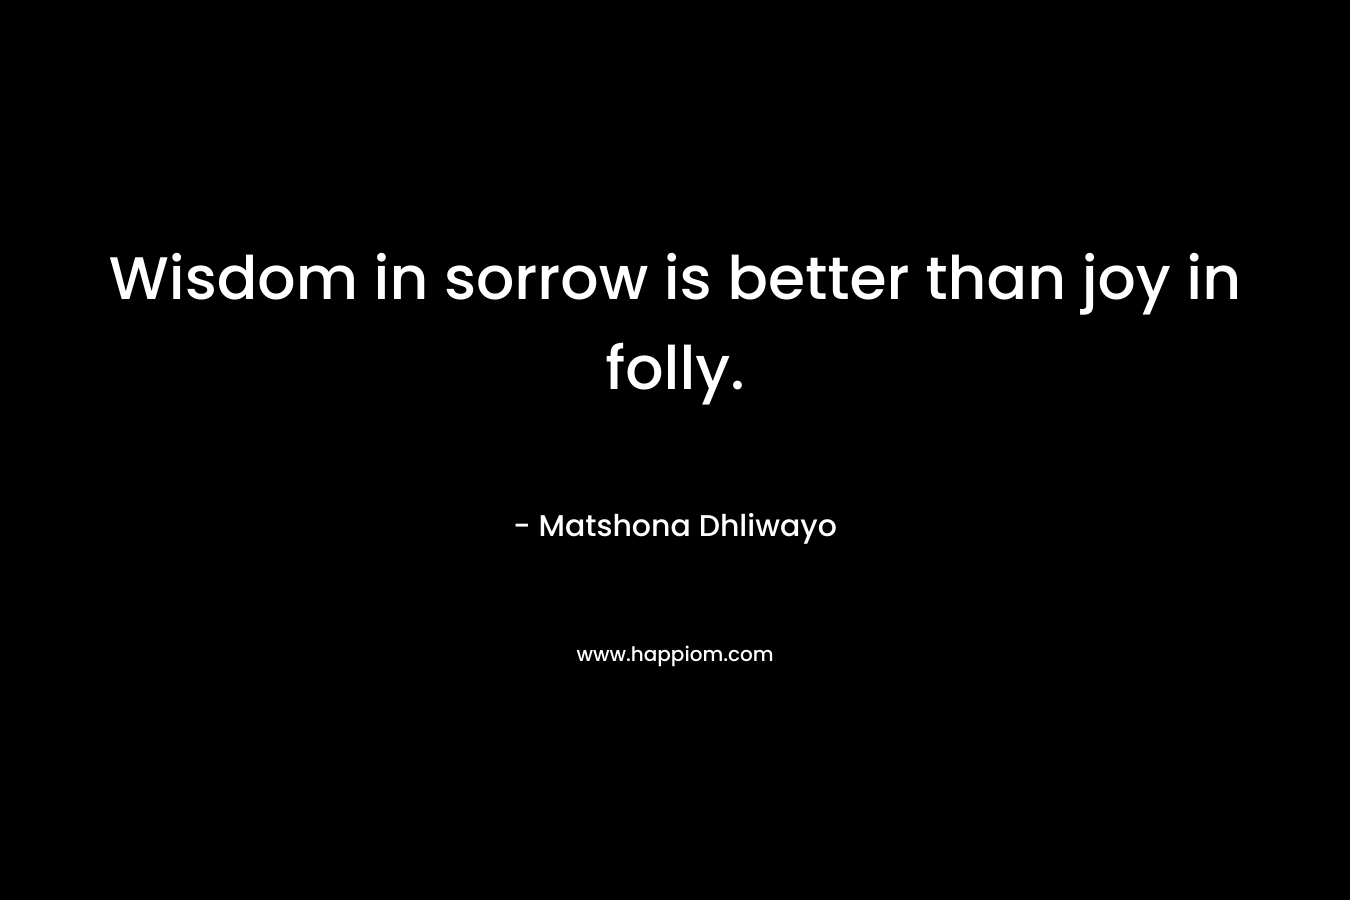 Wisdom in sorrow is better than joy in folly.